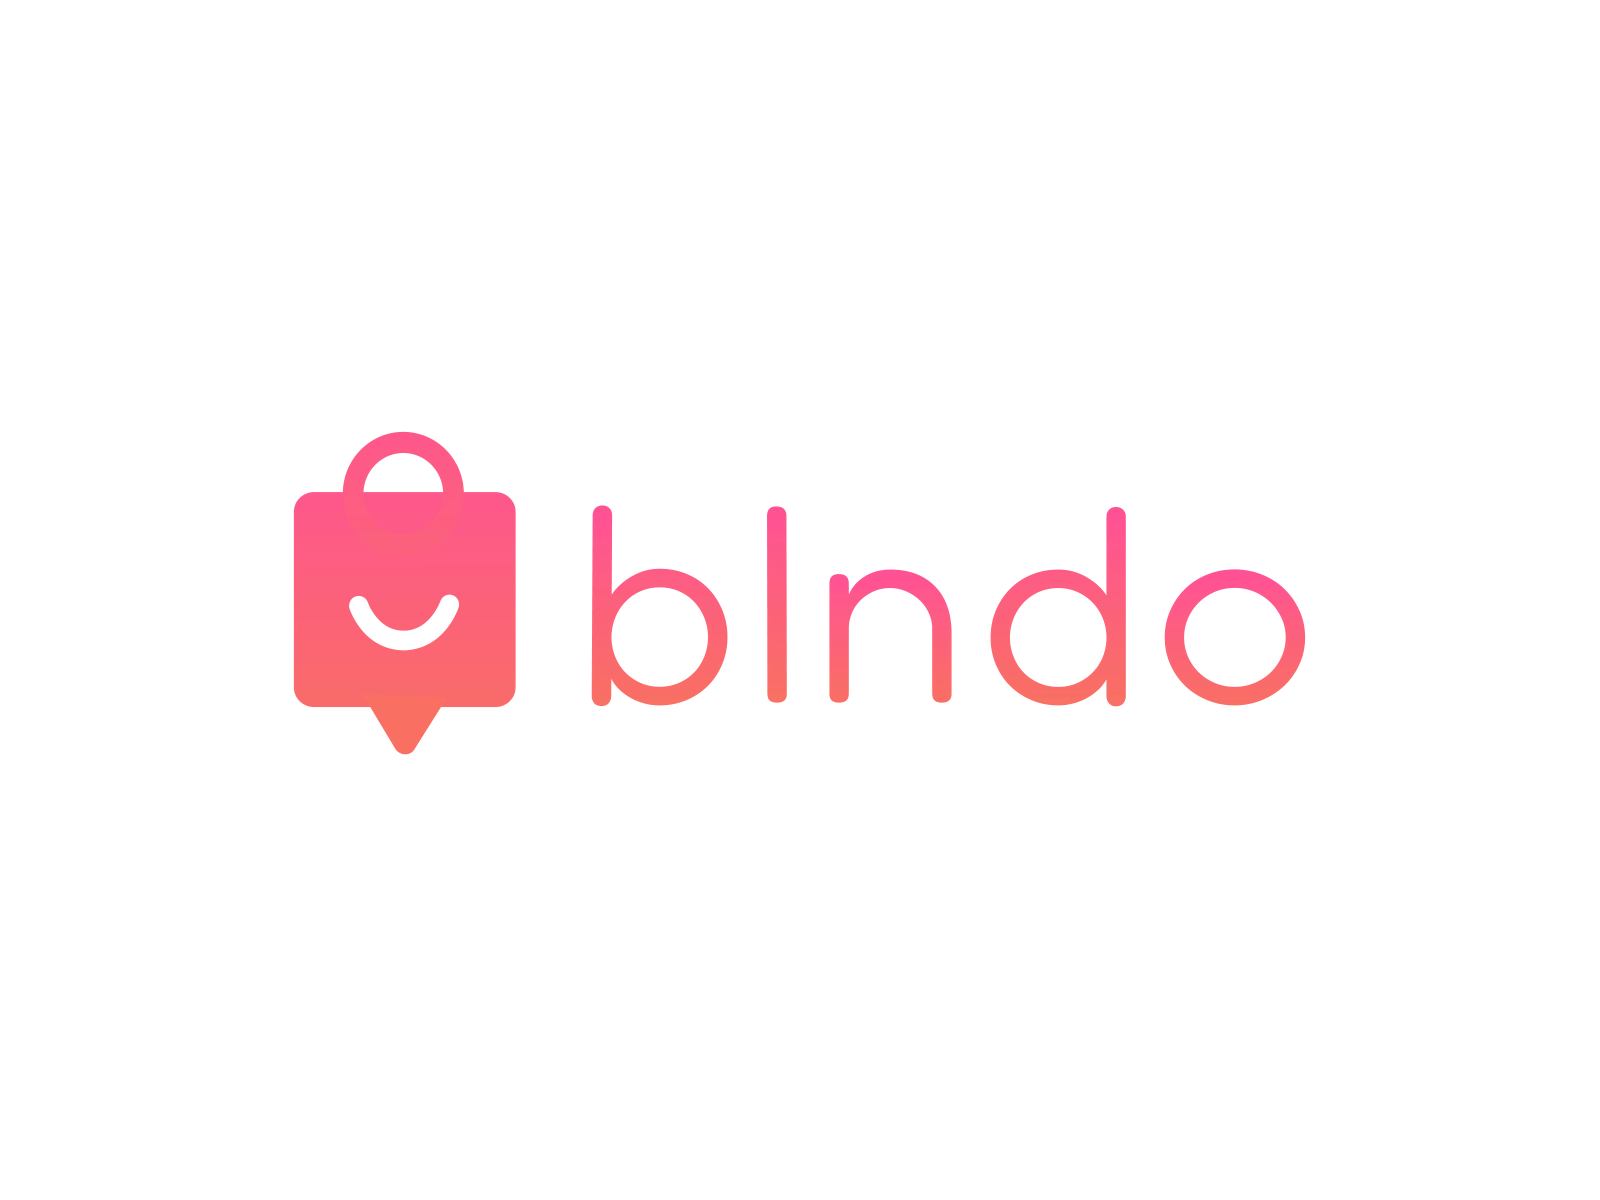 Blndo Logo Animation